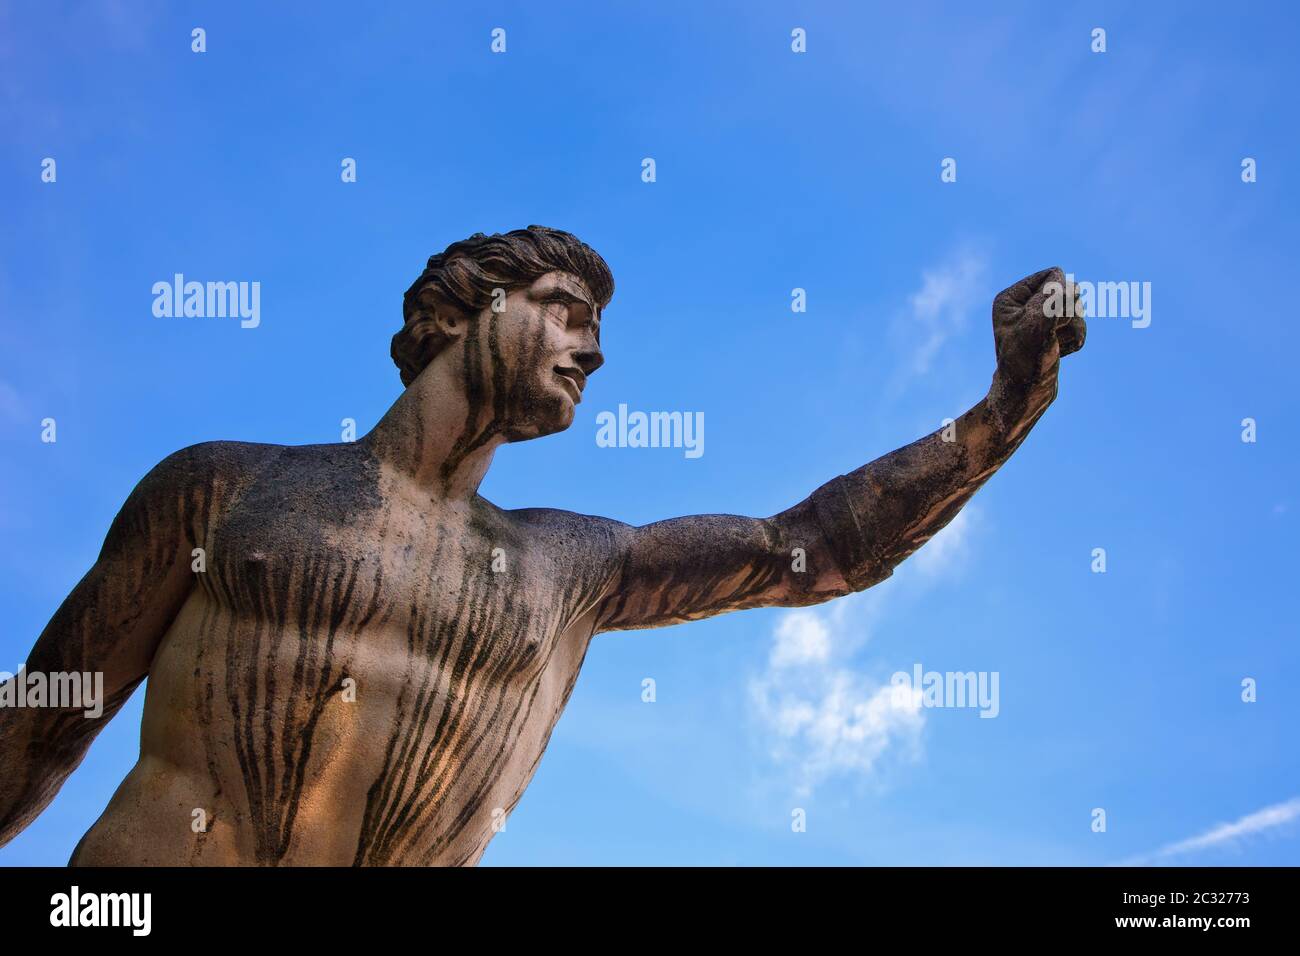 Statue in Mirabell garden, Salzburg Stock Photo